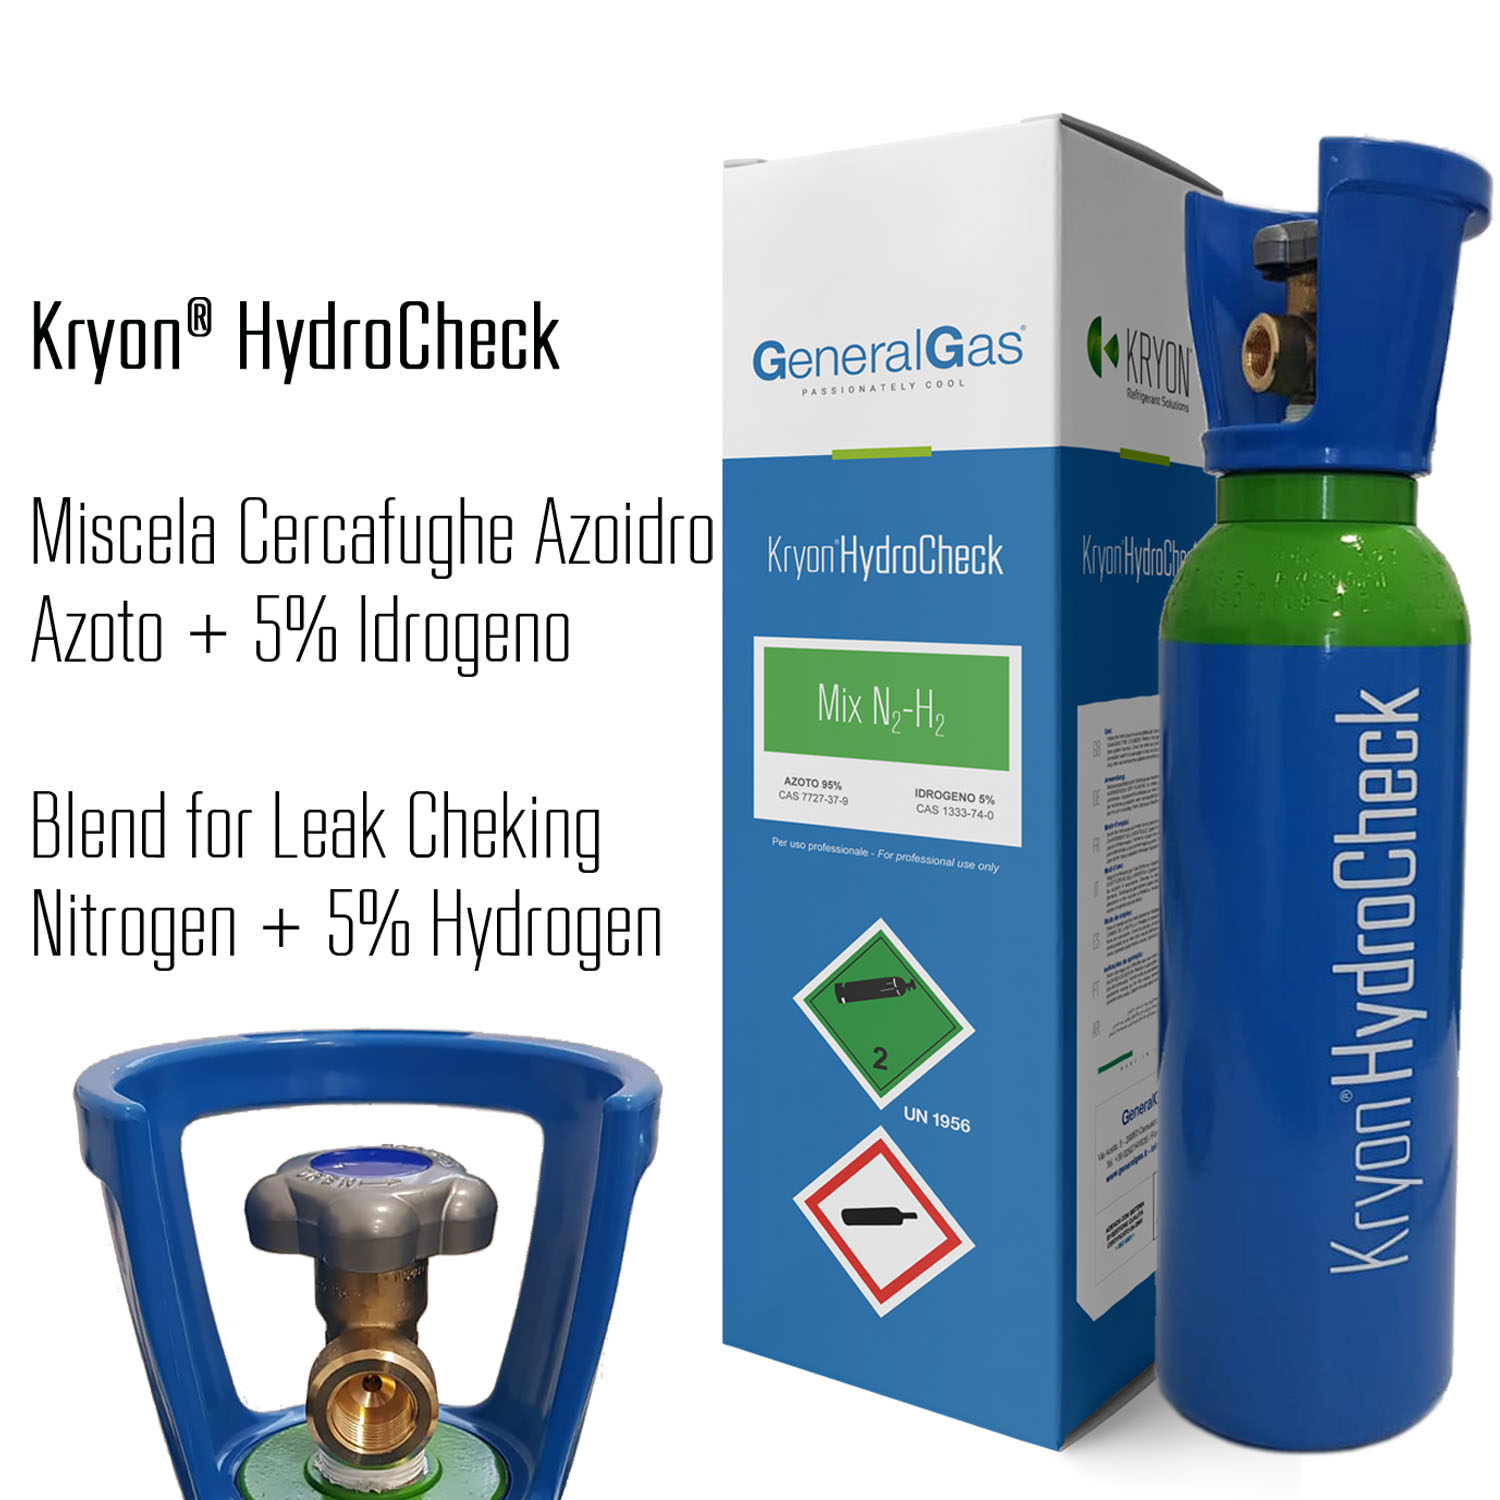 Bombola Kryon® HydroCheck azoto/Idrogeno 5% - 5 lt/1mc in scatola di cartone (usufruisce servizio HandyGas cambio immediato vuoto contro pieno)